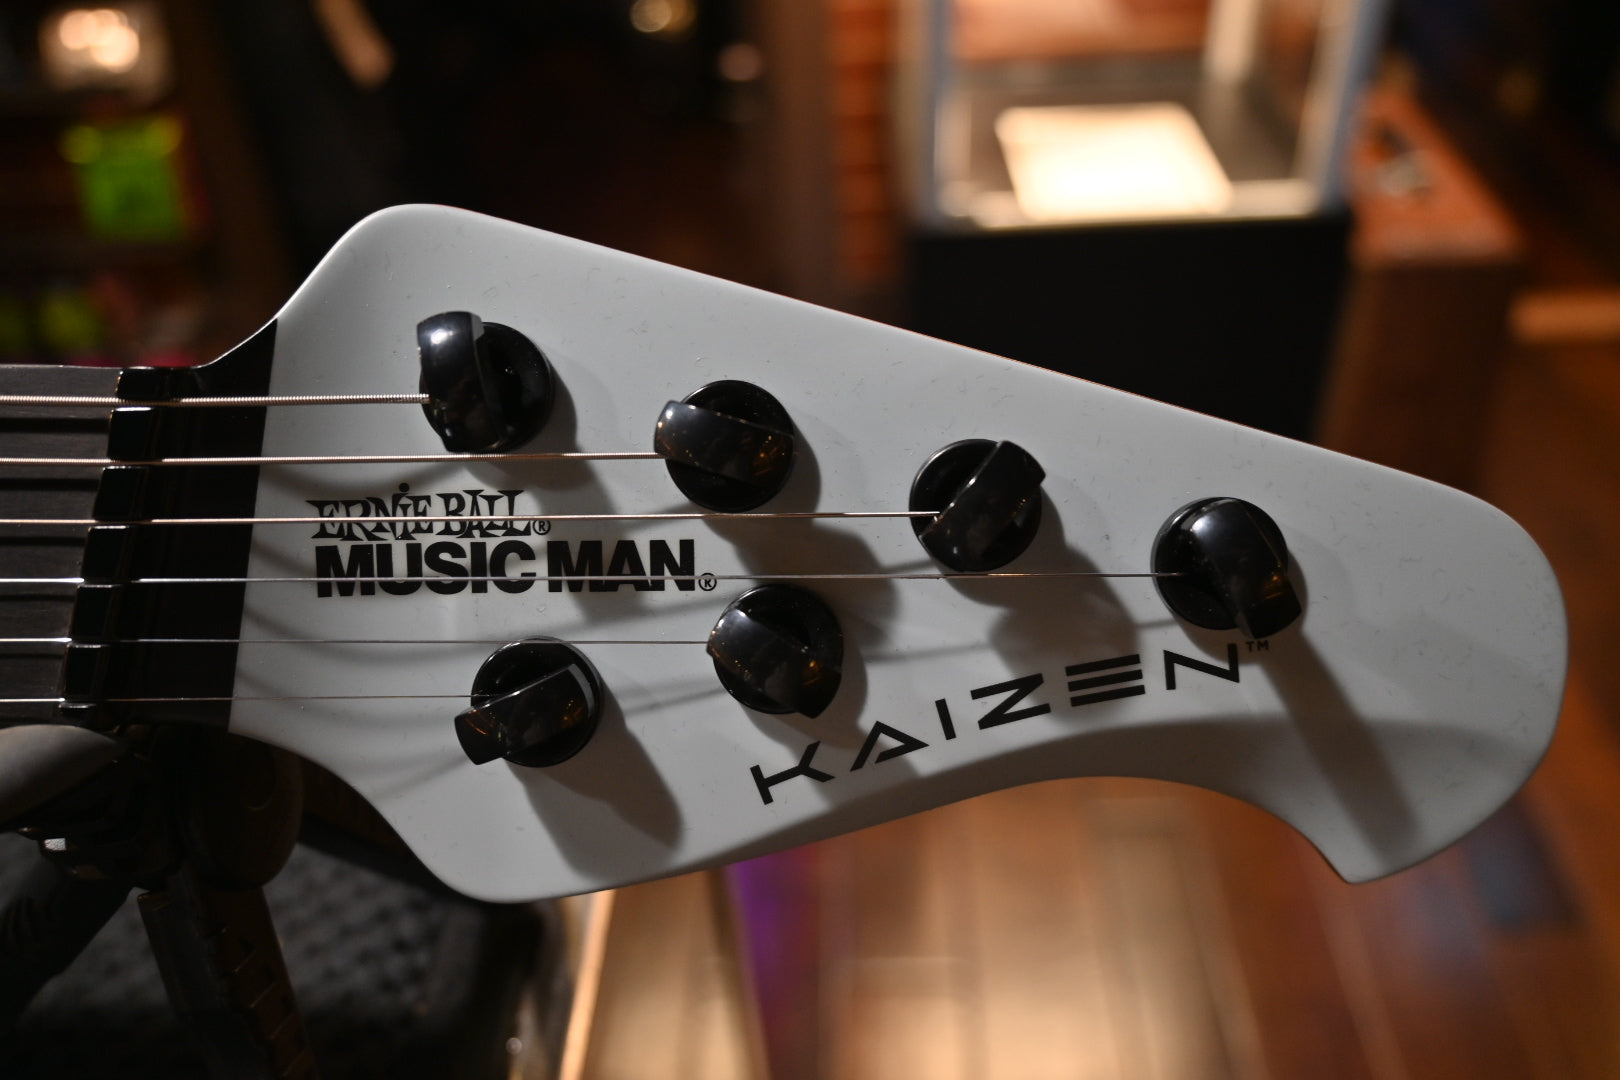 Music Man Kaizen 6 - Mint Guitar #9115 - Danville Music